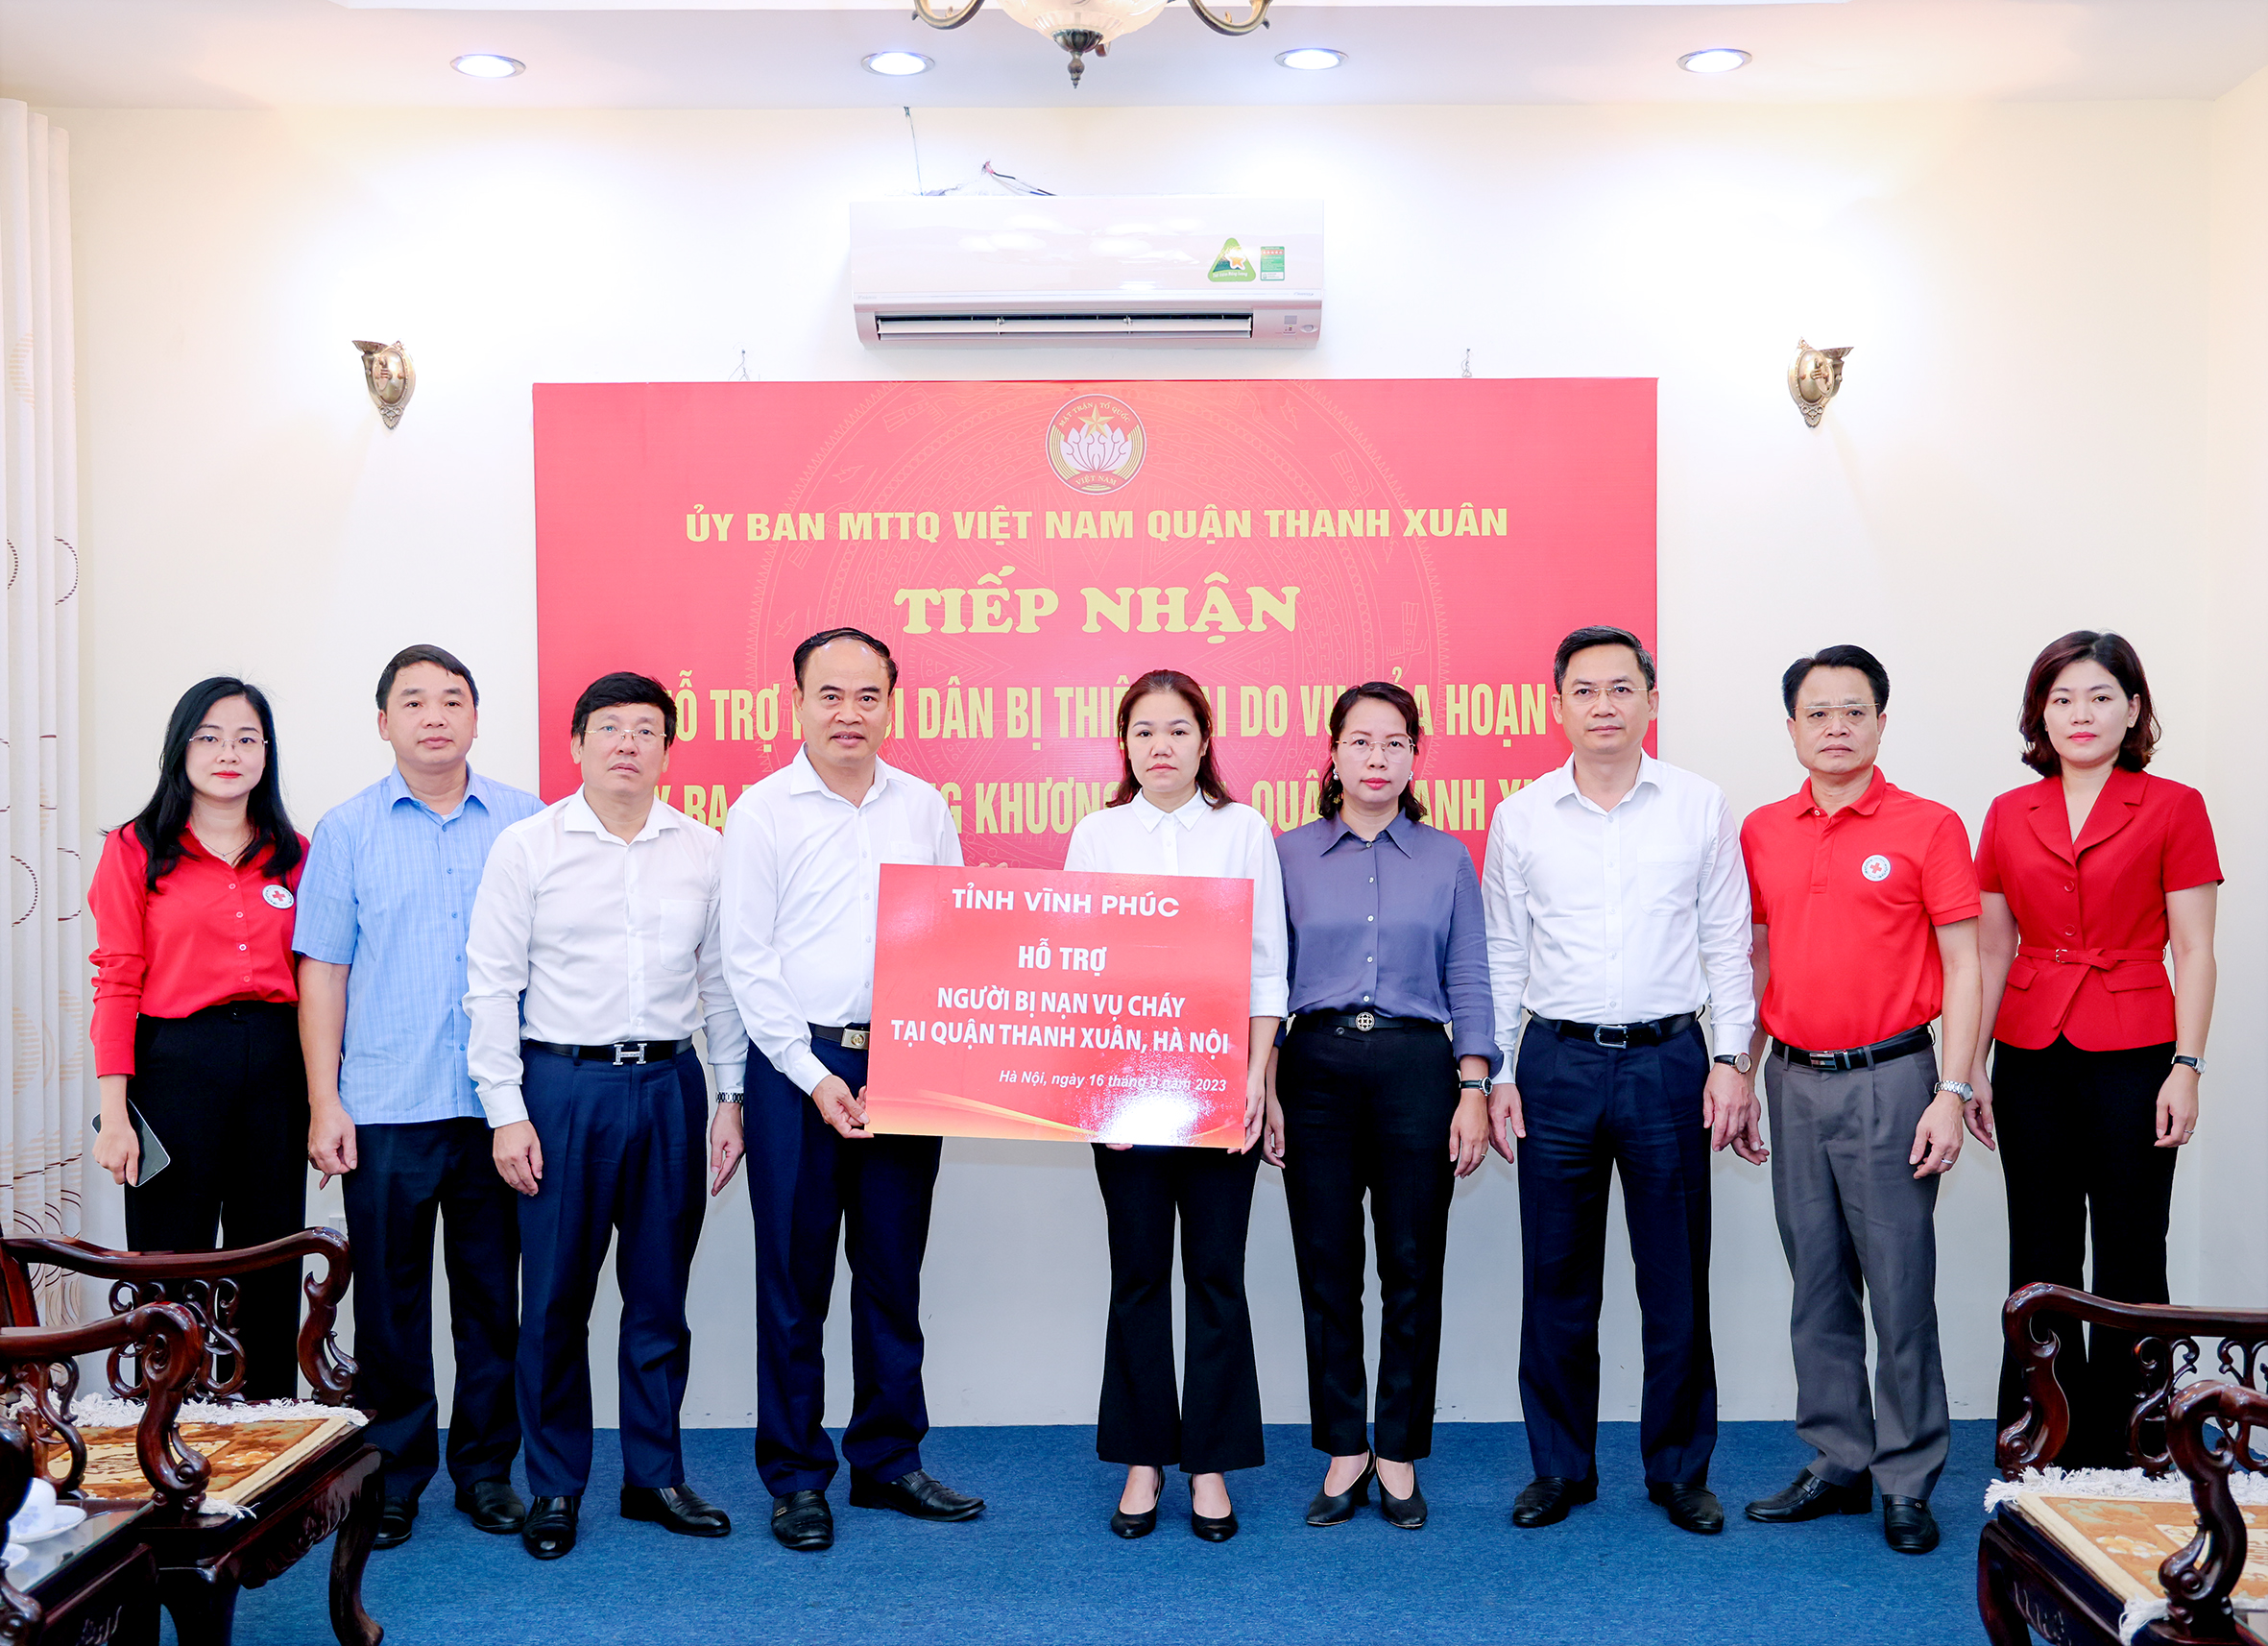 Tỉnh Vĩnh Phúc trao tiền hỗ cho người bị nạn trong vụ cháy tại quận Thanh Xuân,TP. Hà Nội.